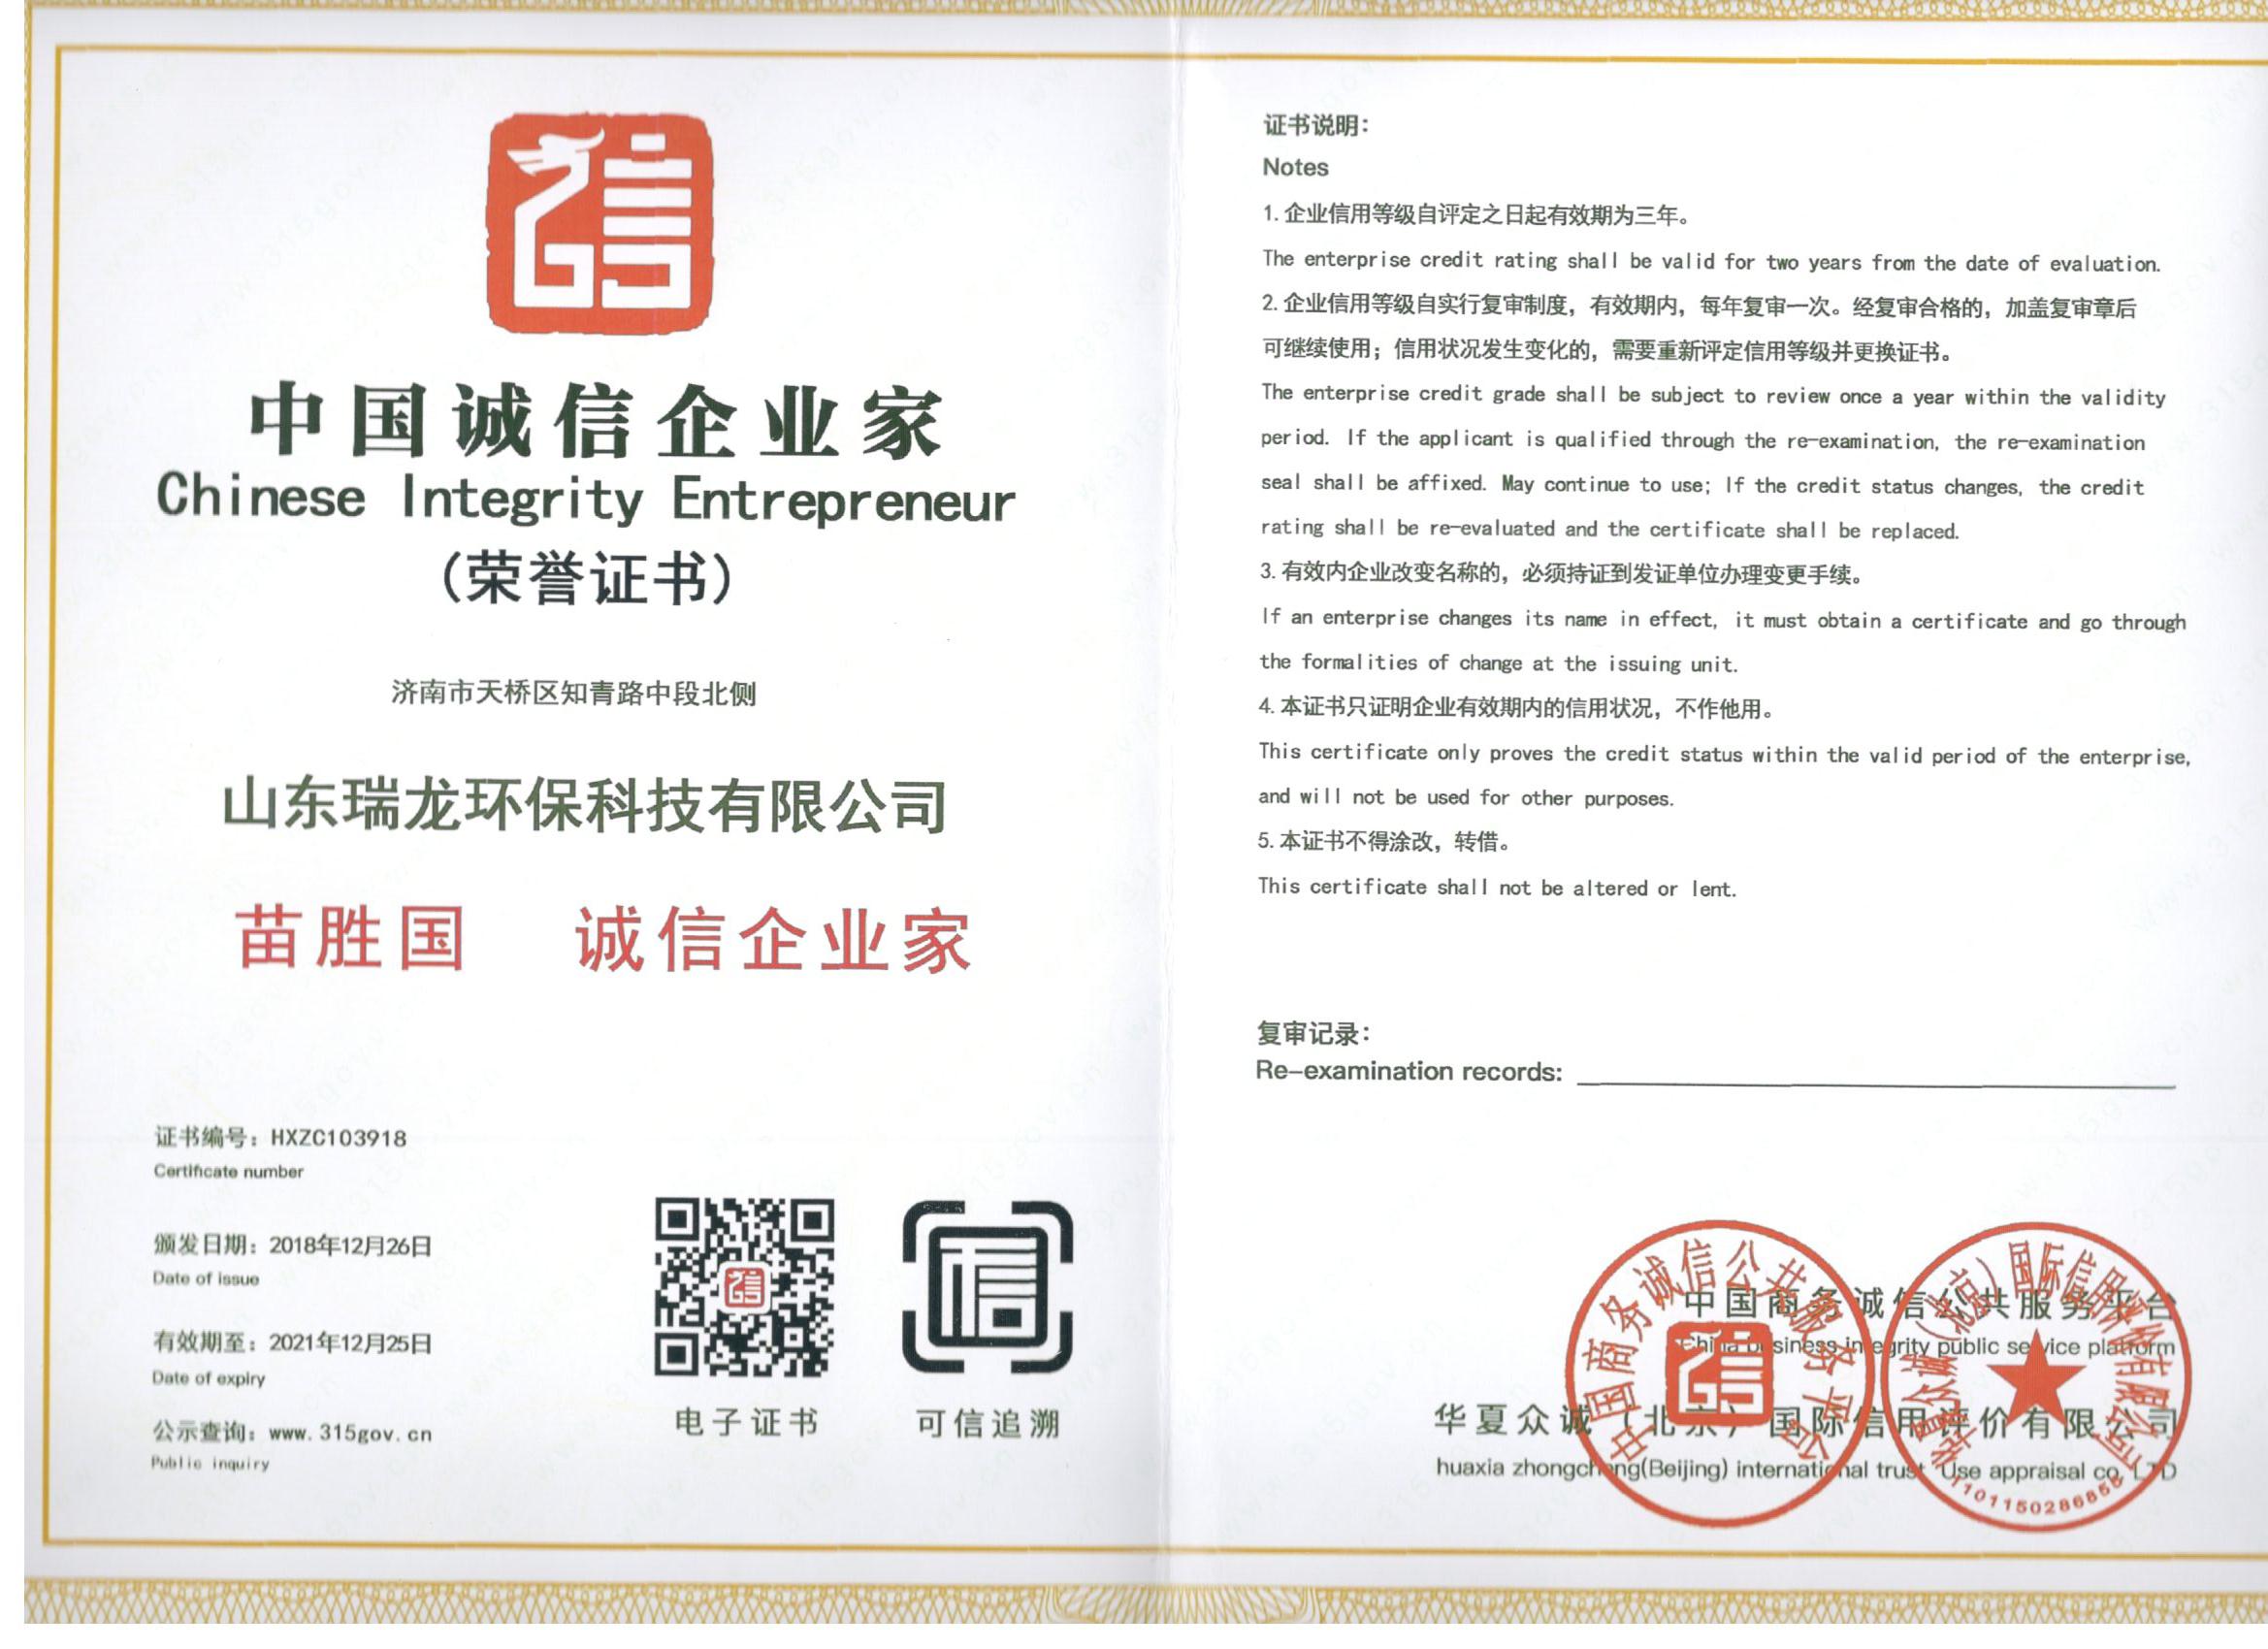 中國誠信企業家經理人證書 Certificate of honest entrepreneur manager in China